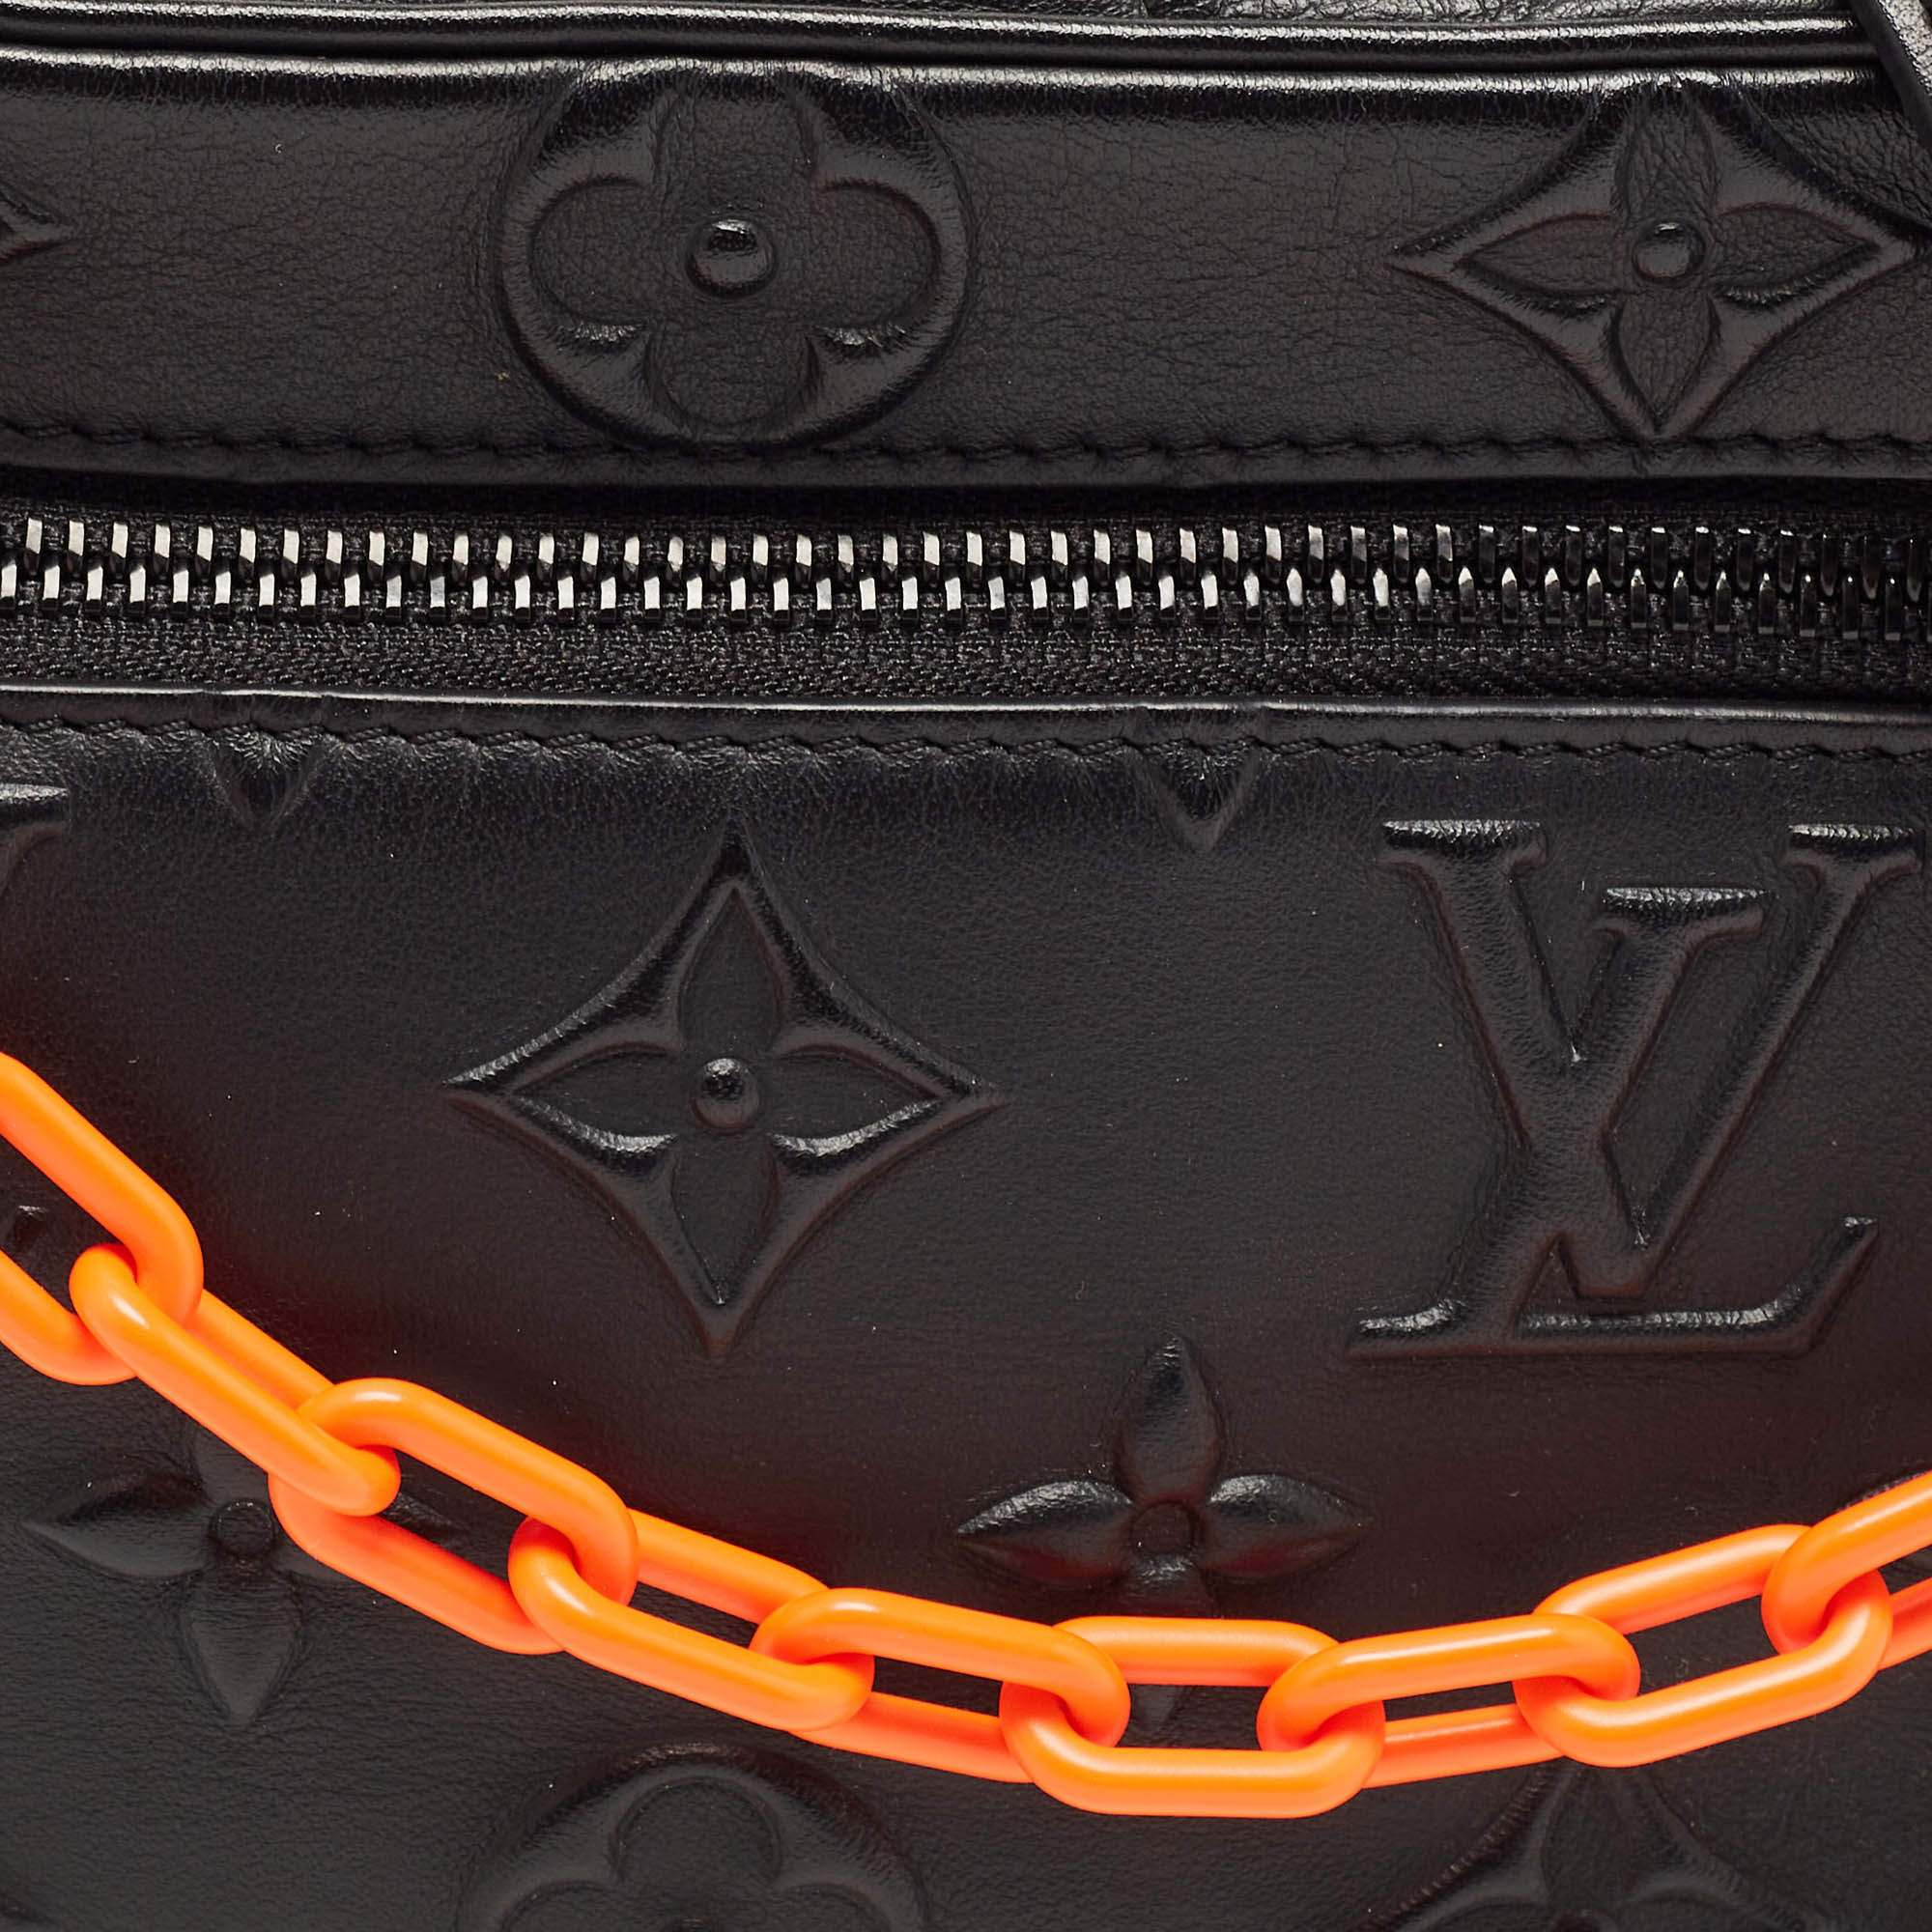 Petit noé trunk leather handbag Louis Vuitton Black in Leather - 25751408